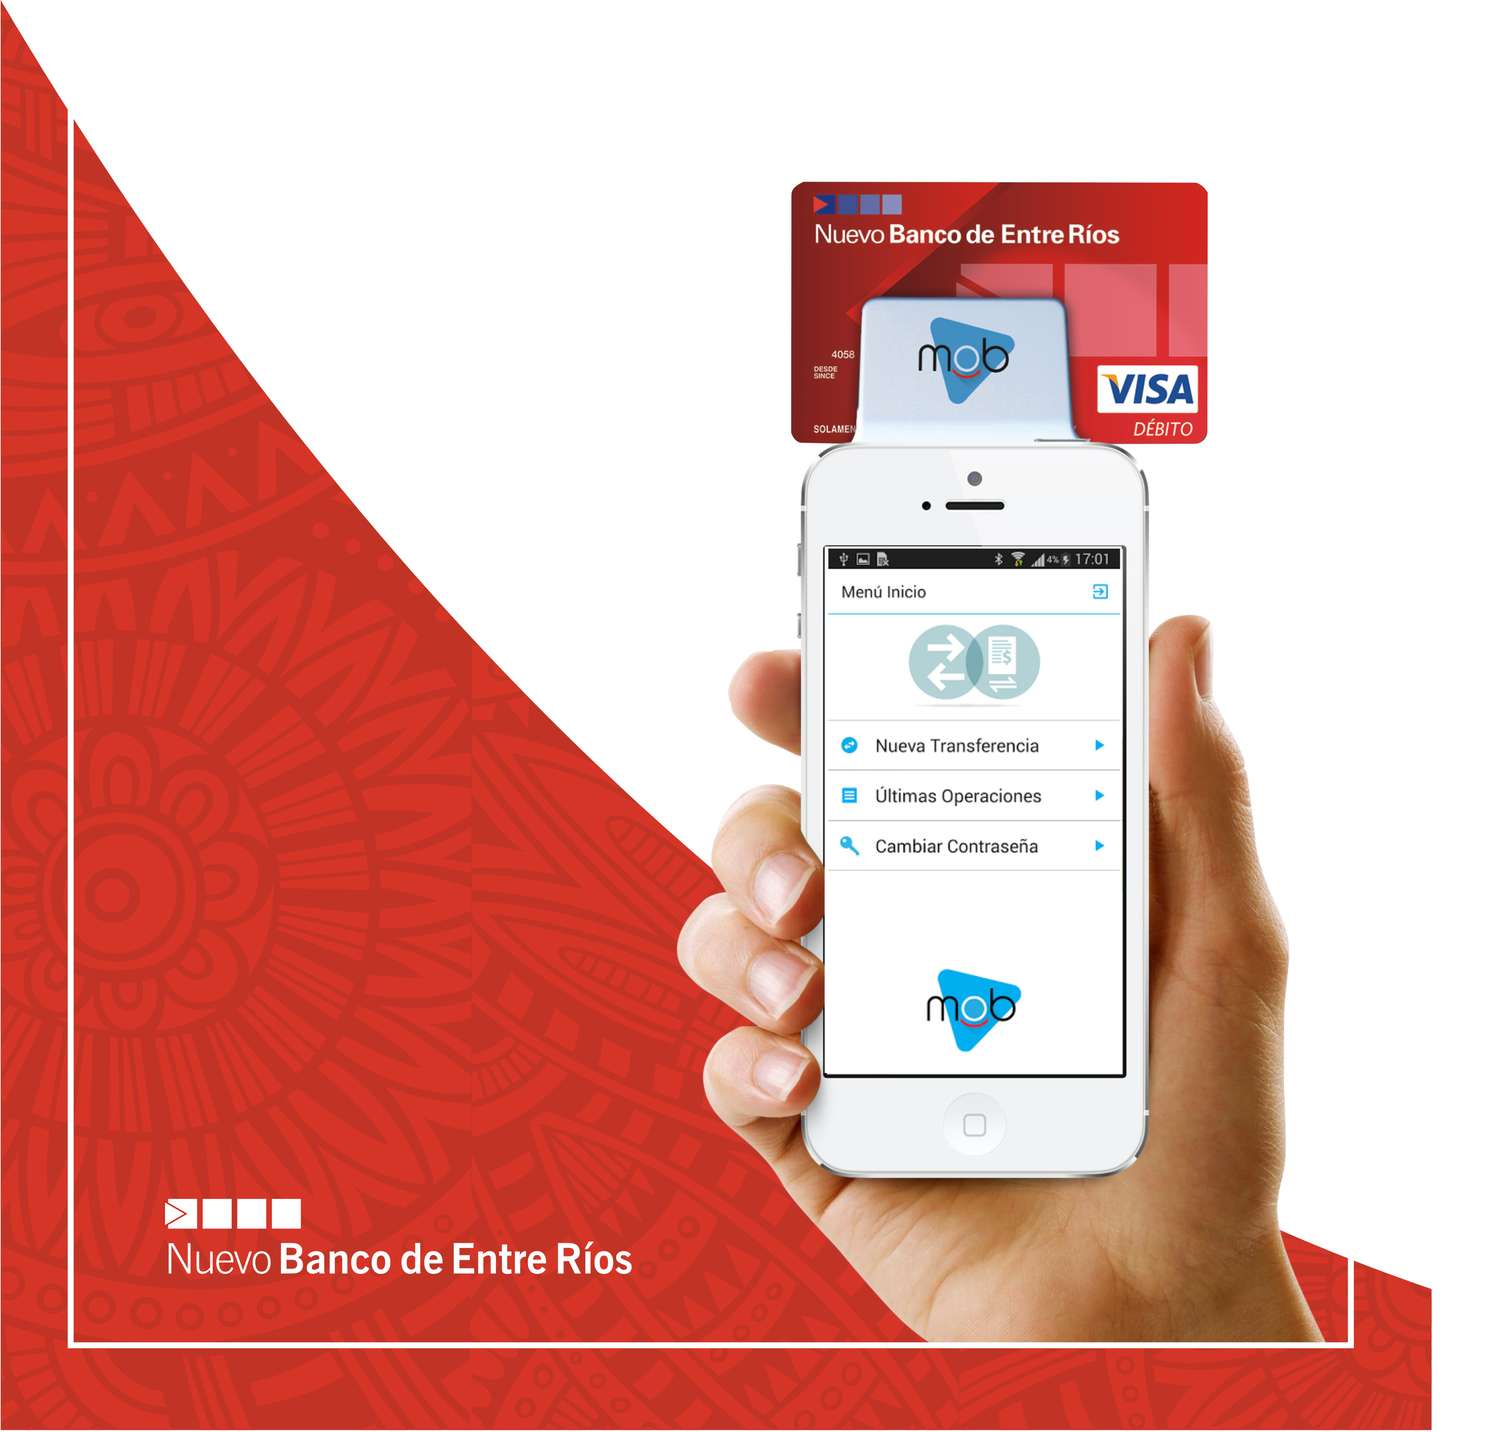 El Nuevo Banco de Entre Ríos lanzó la plataforma de pago móvil Red Mob